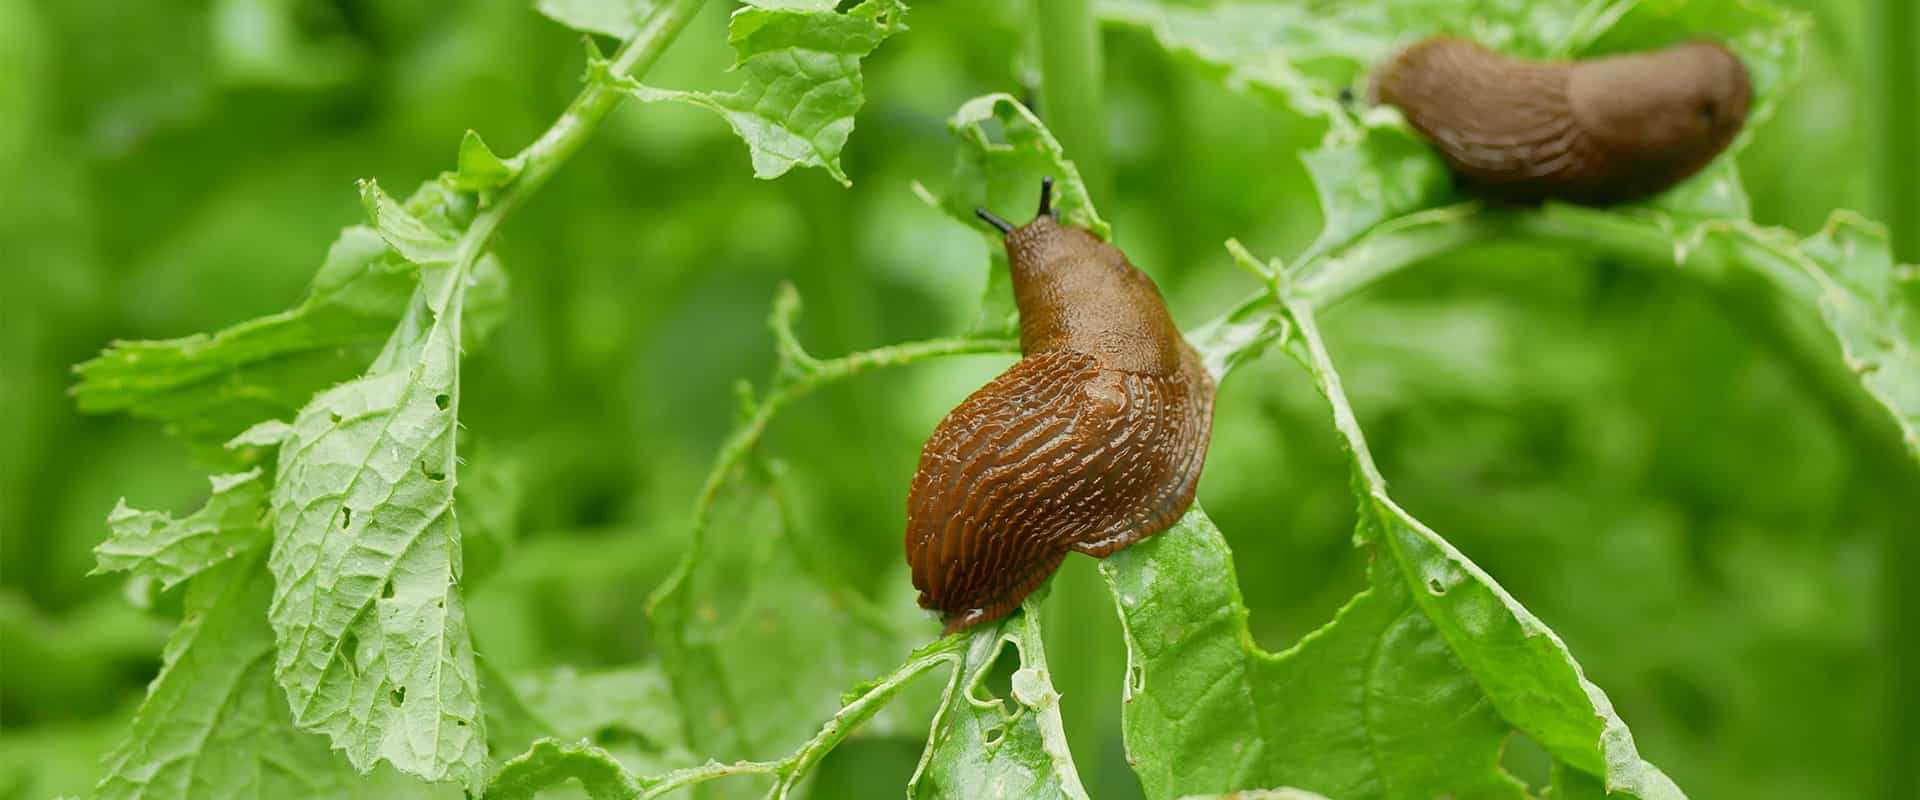 slugs on leaves